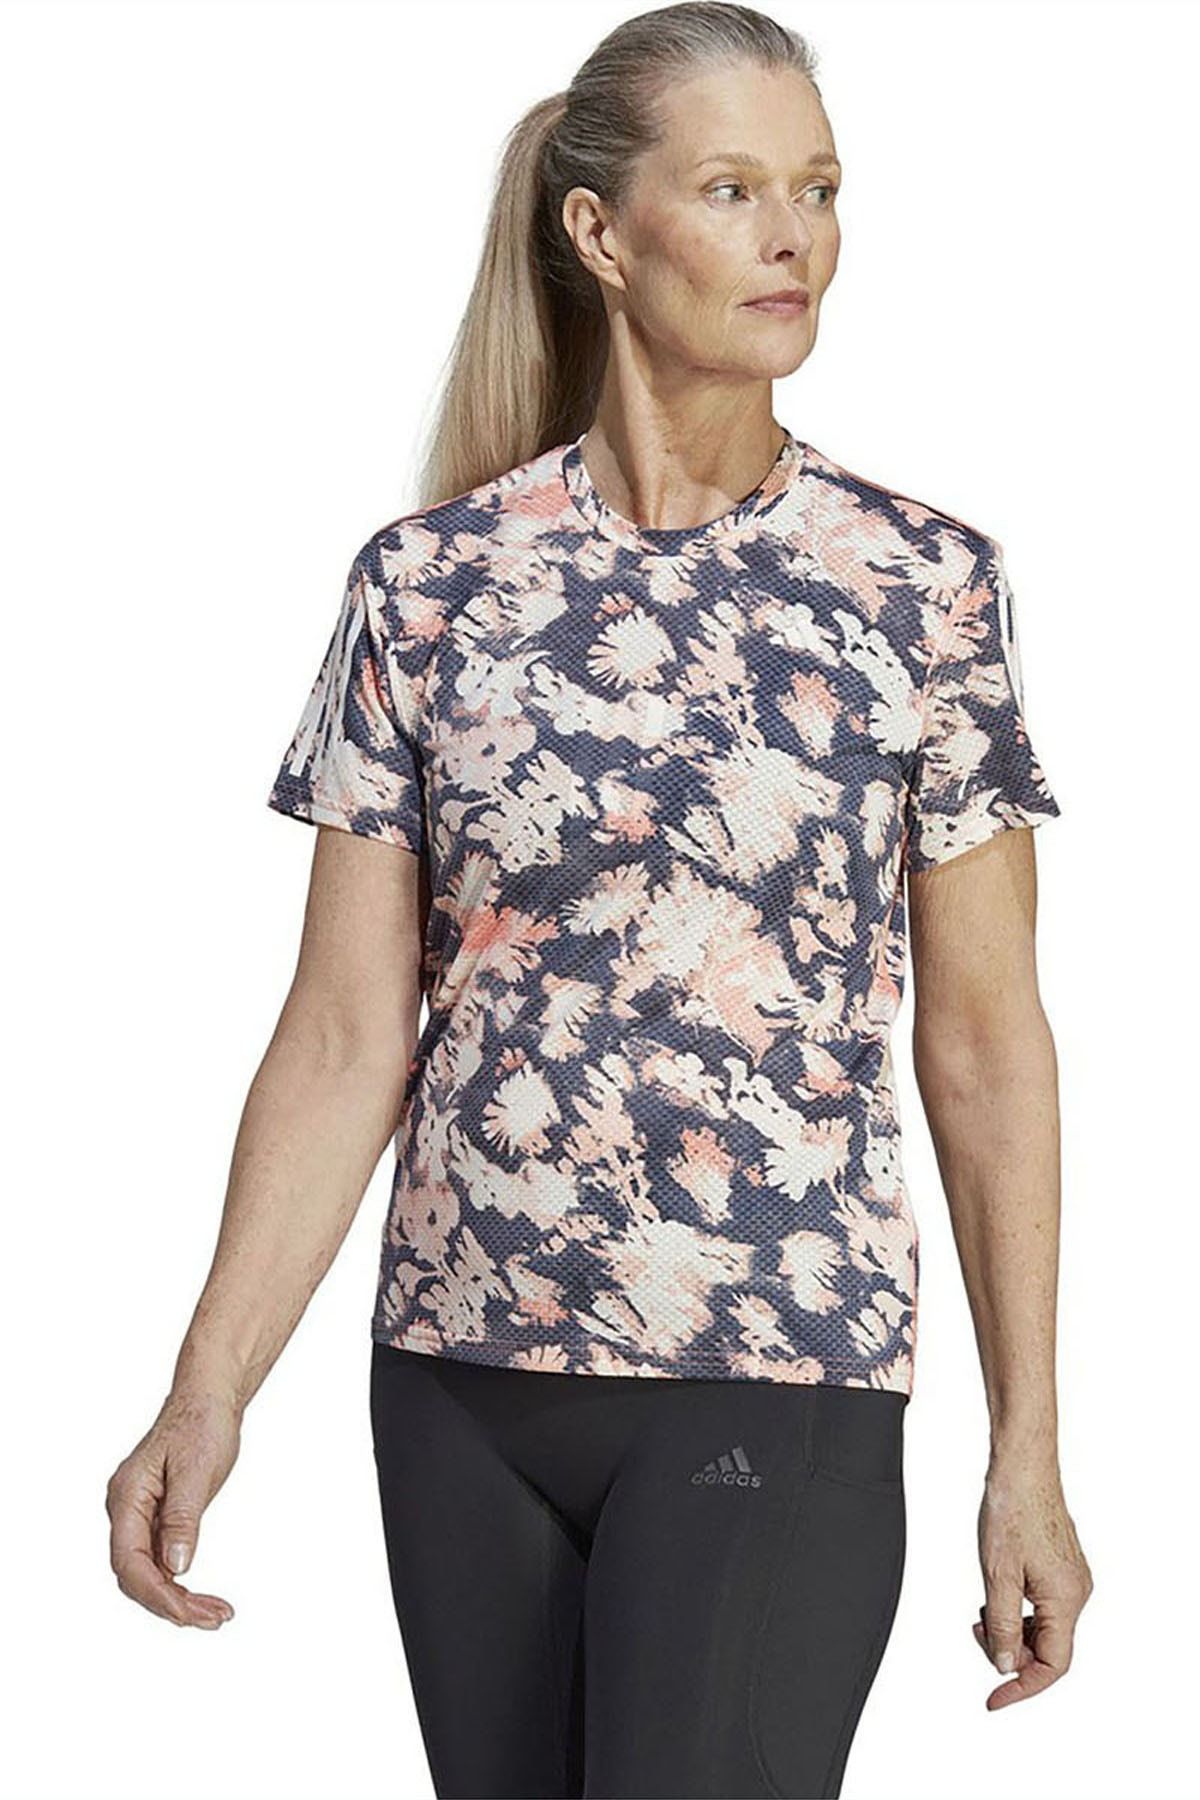 adidas Kadın Koşu - Yürüyüş T-shirt Otr Cooler Tee Hr9968